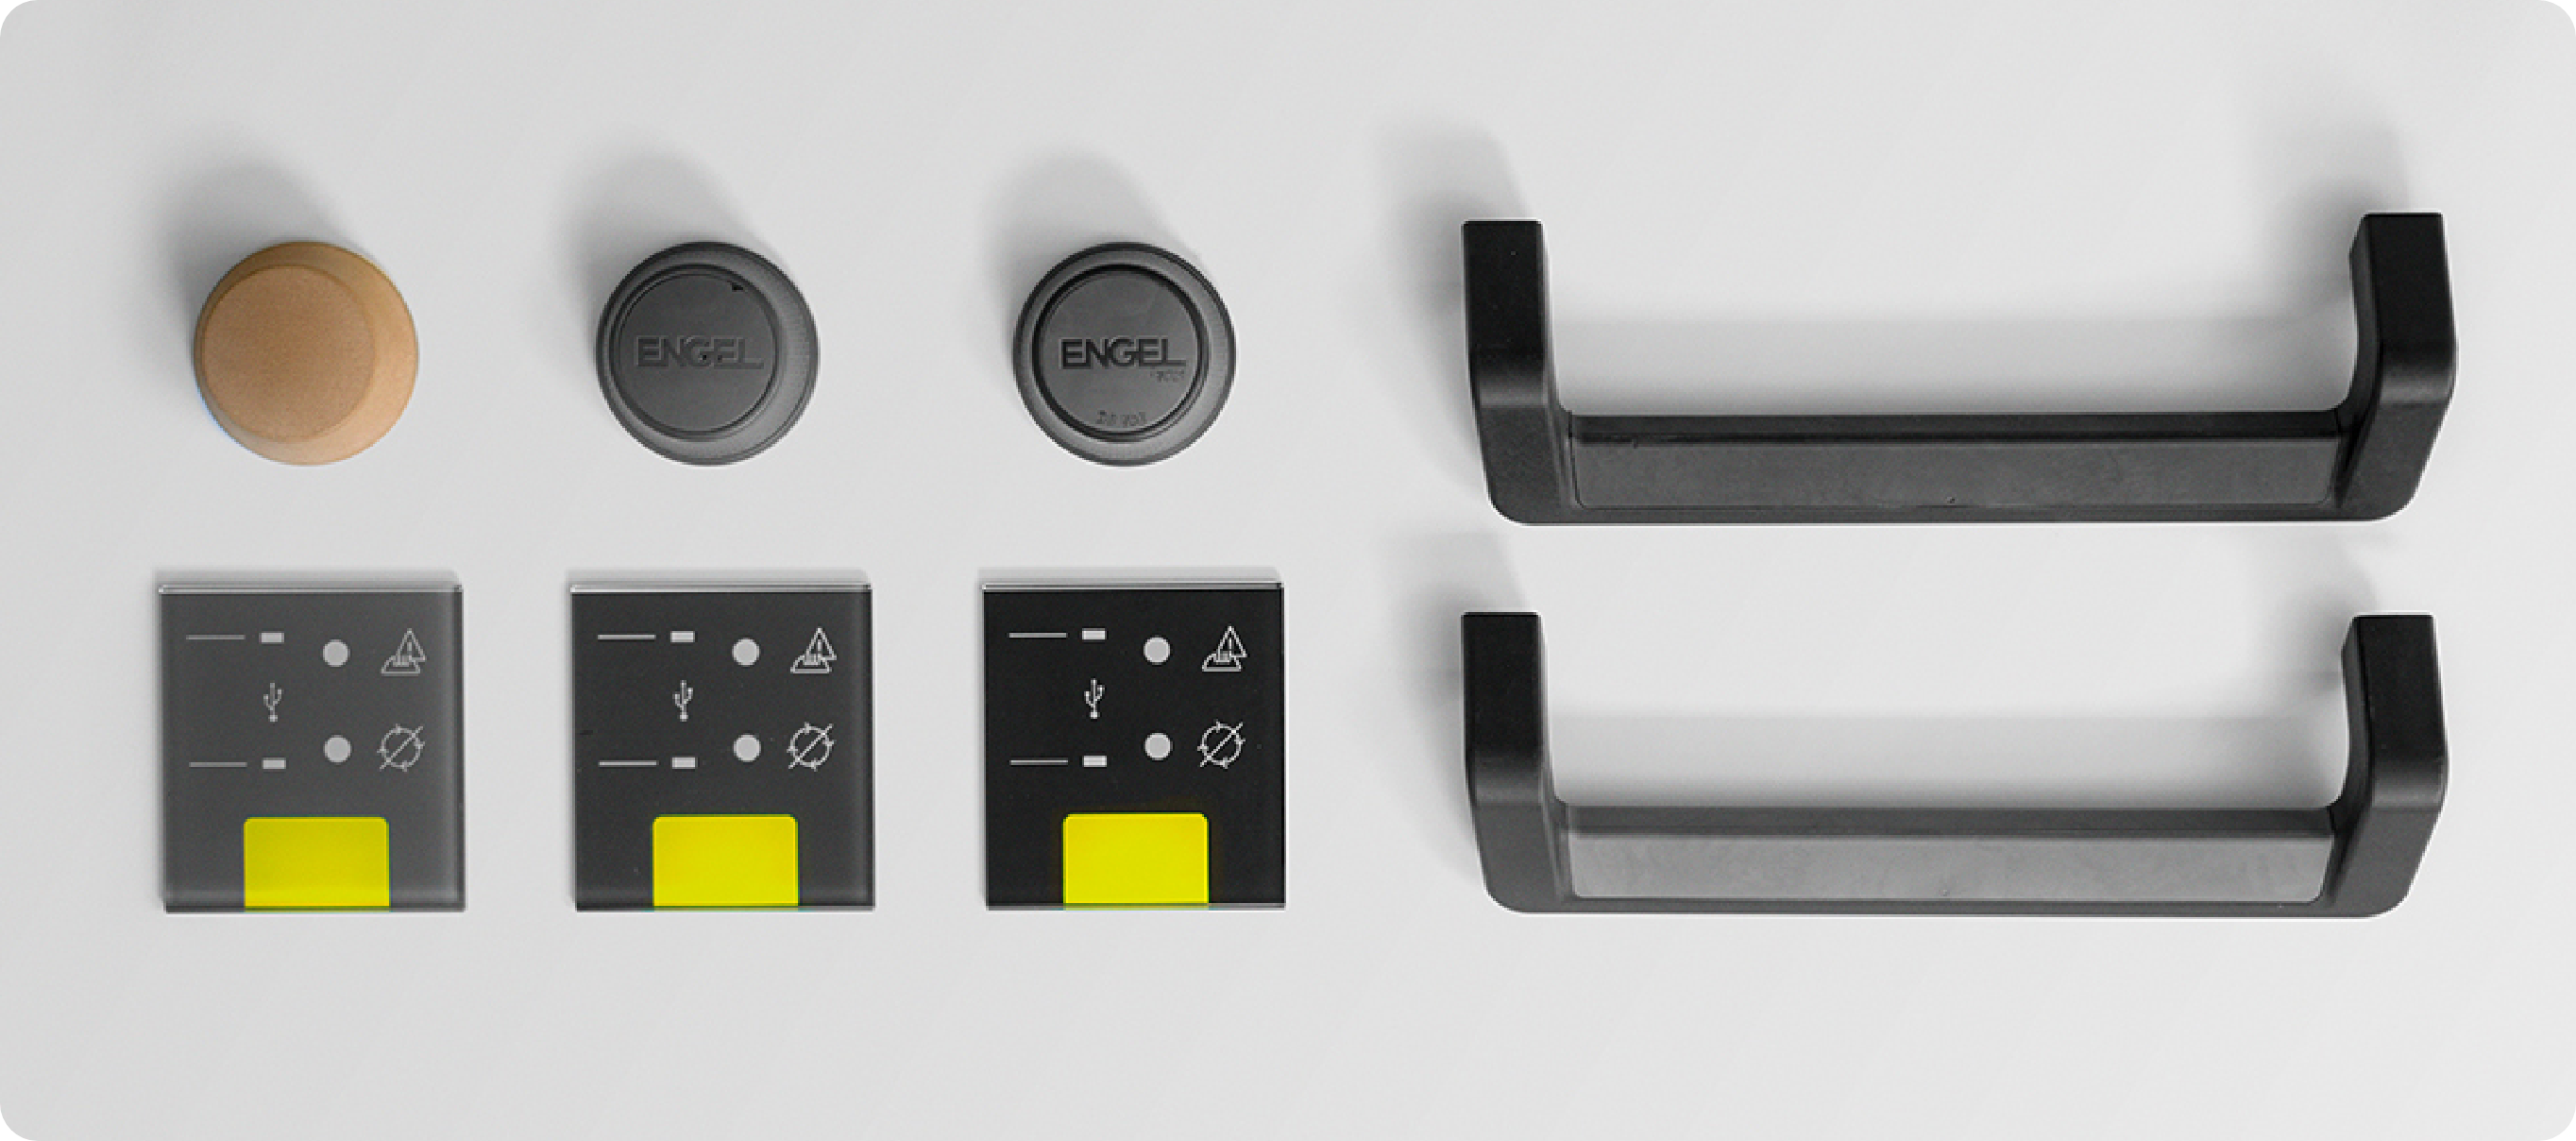 touchscreen control optionen | Industriedesign Produktdesign in Wien